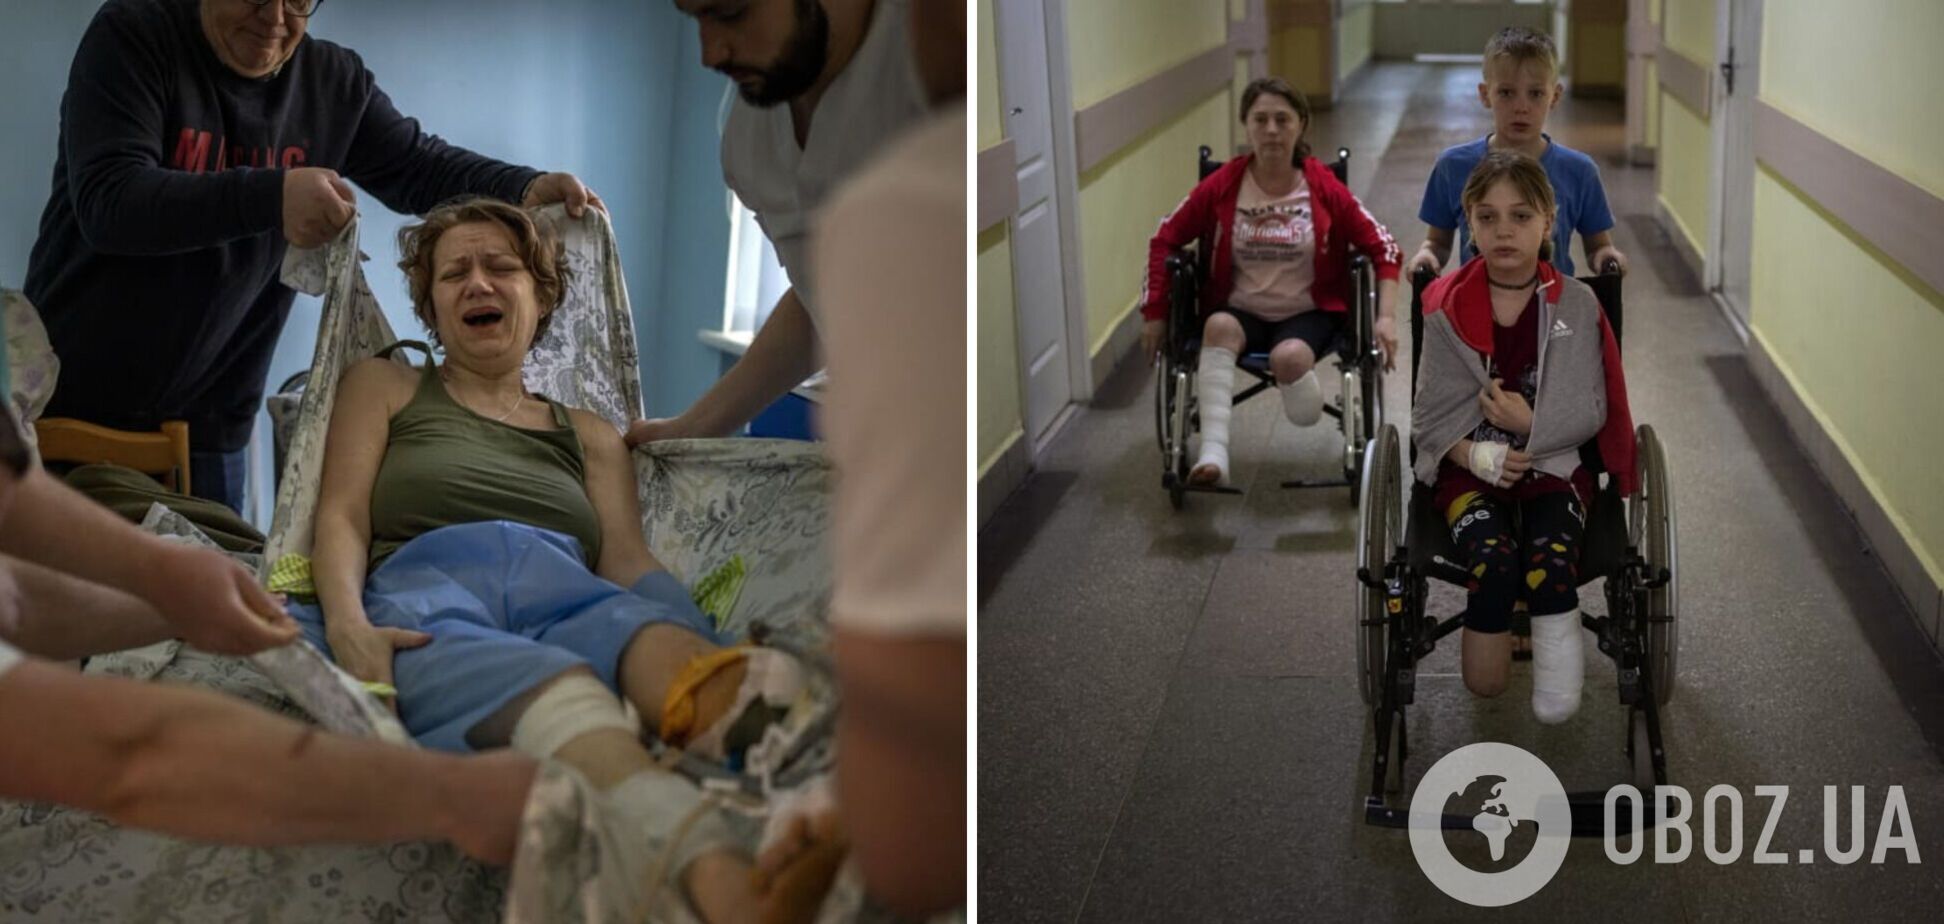 'Щодня звикаю до нового болю': українці отримали жахливі поранення внаслідок російських обстрілів. Фото 18+